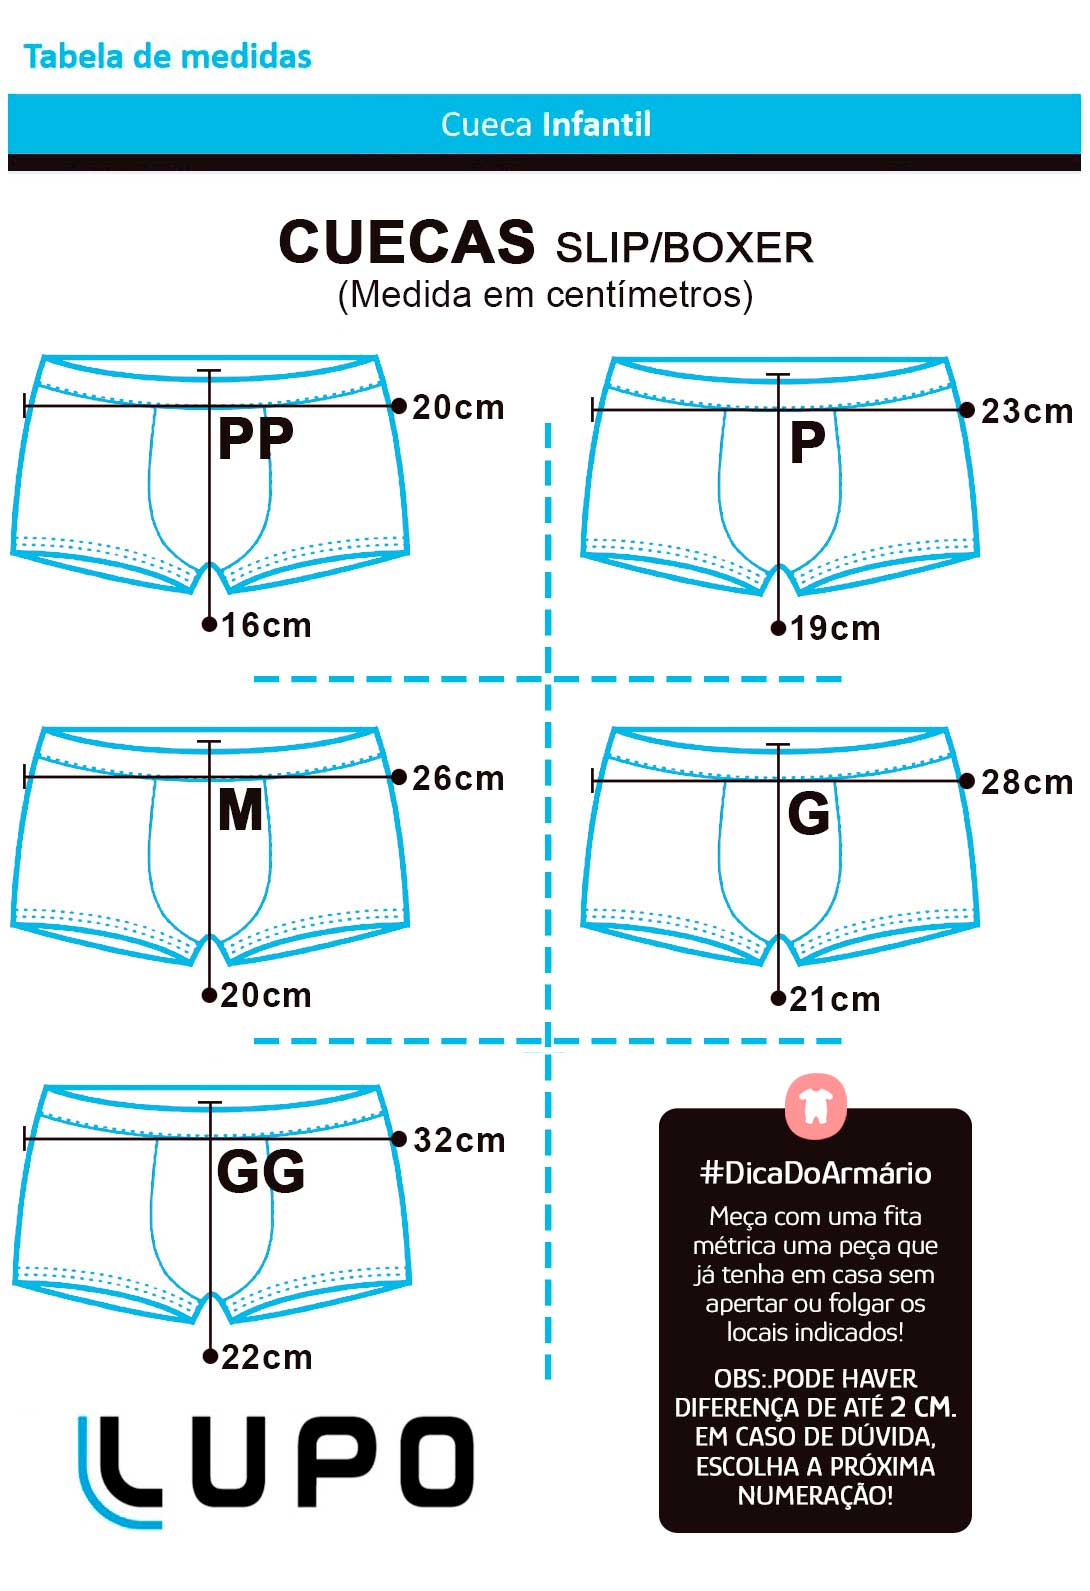 Cueca Infantil Boxer Kit 2 cuecas Marinho Lupo: Tabela de medidas